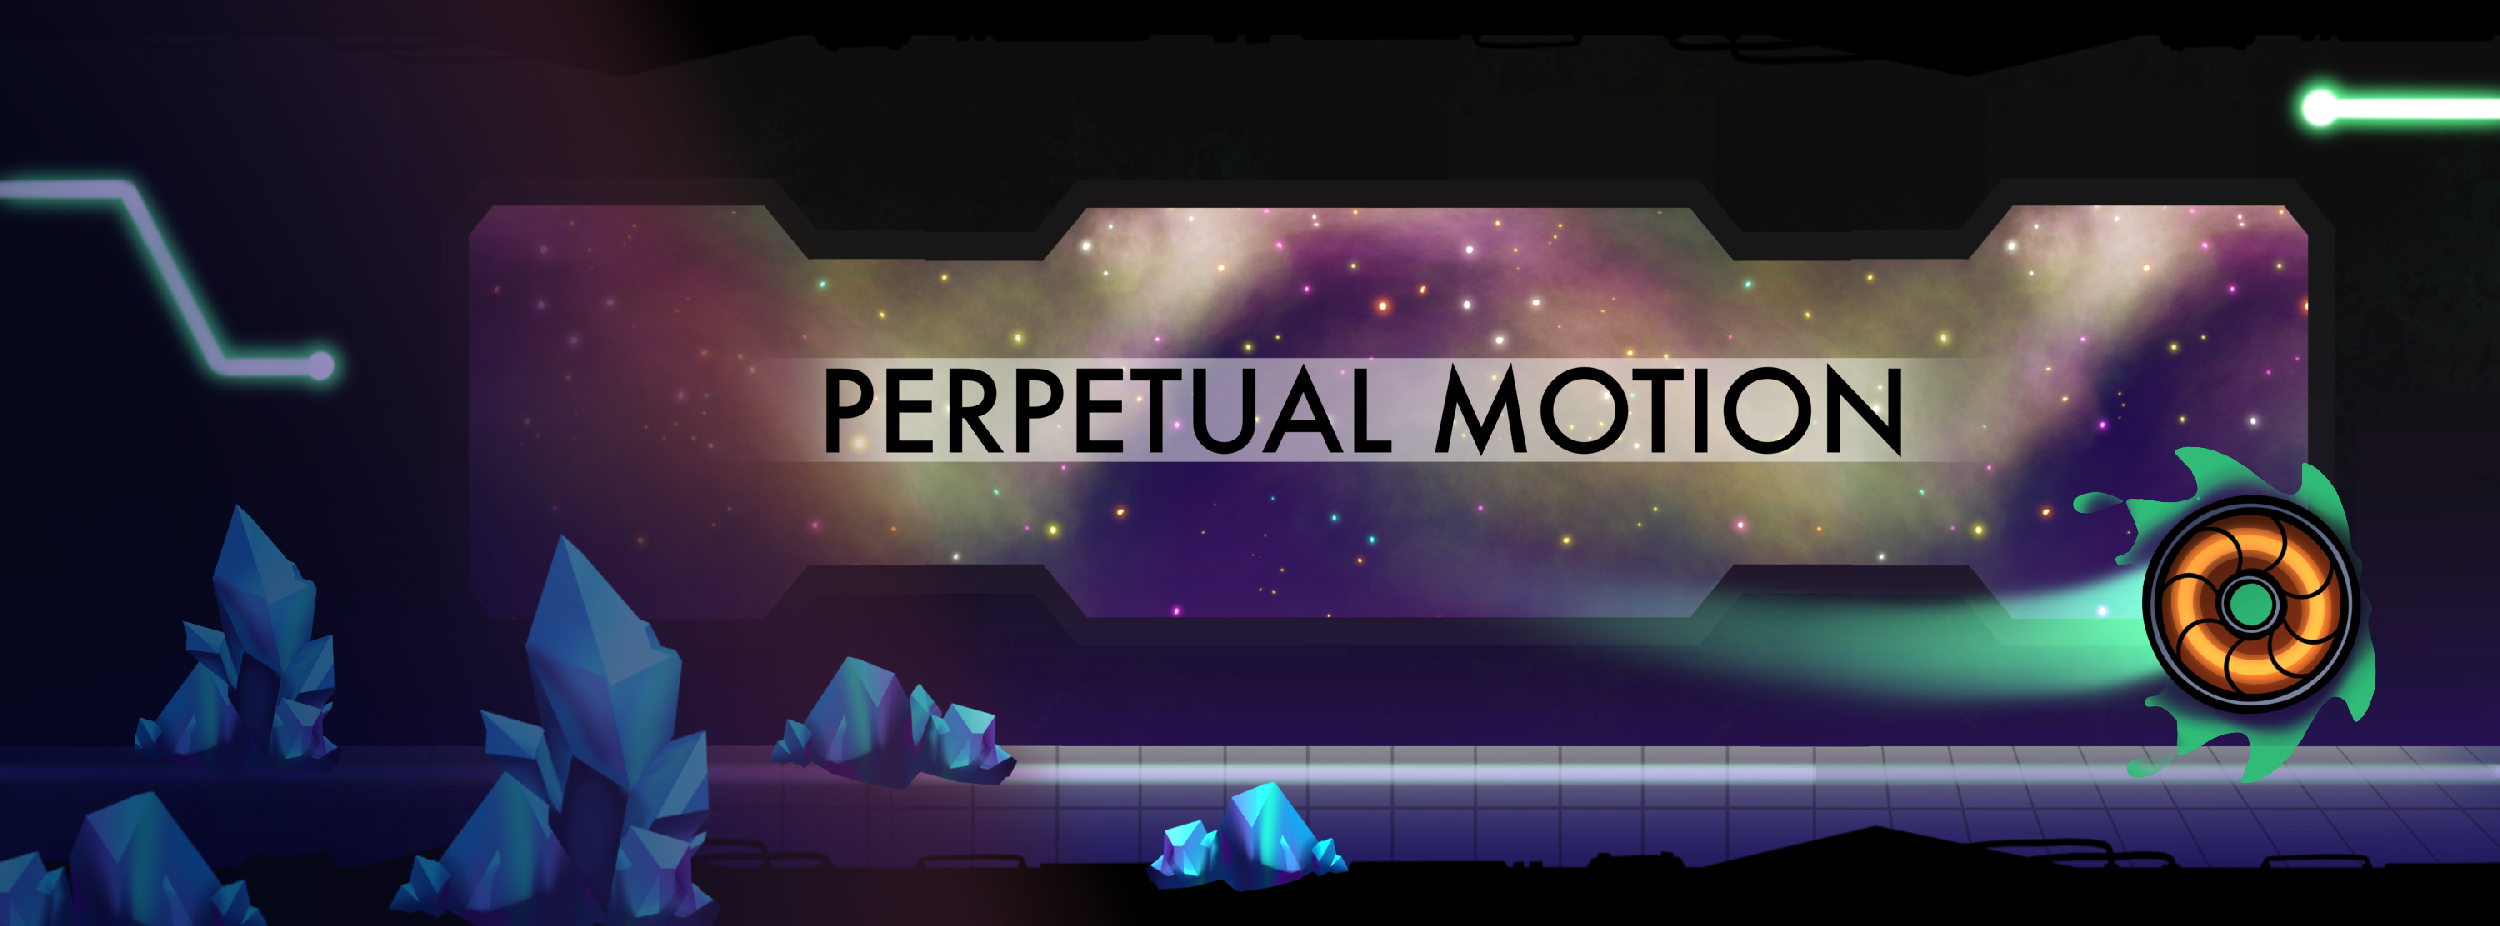 Perpetual Motion Demo